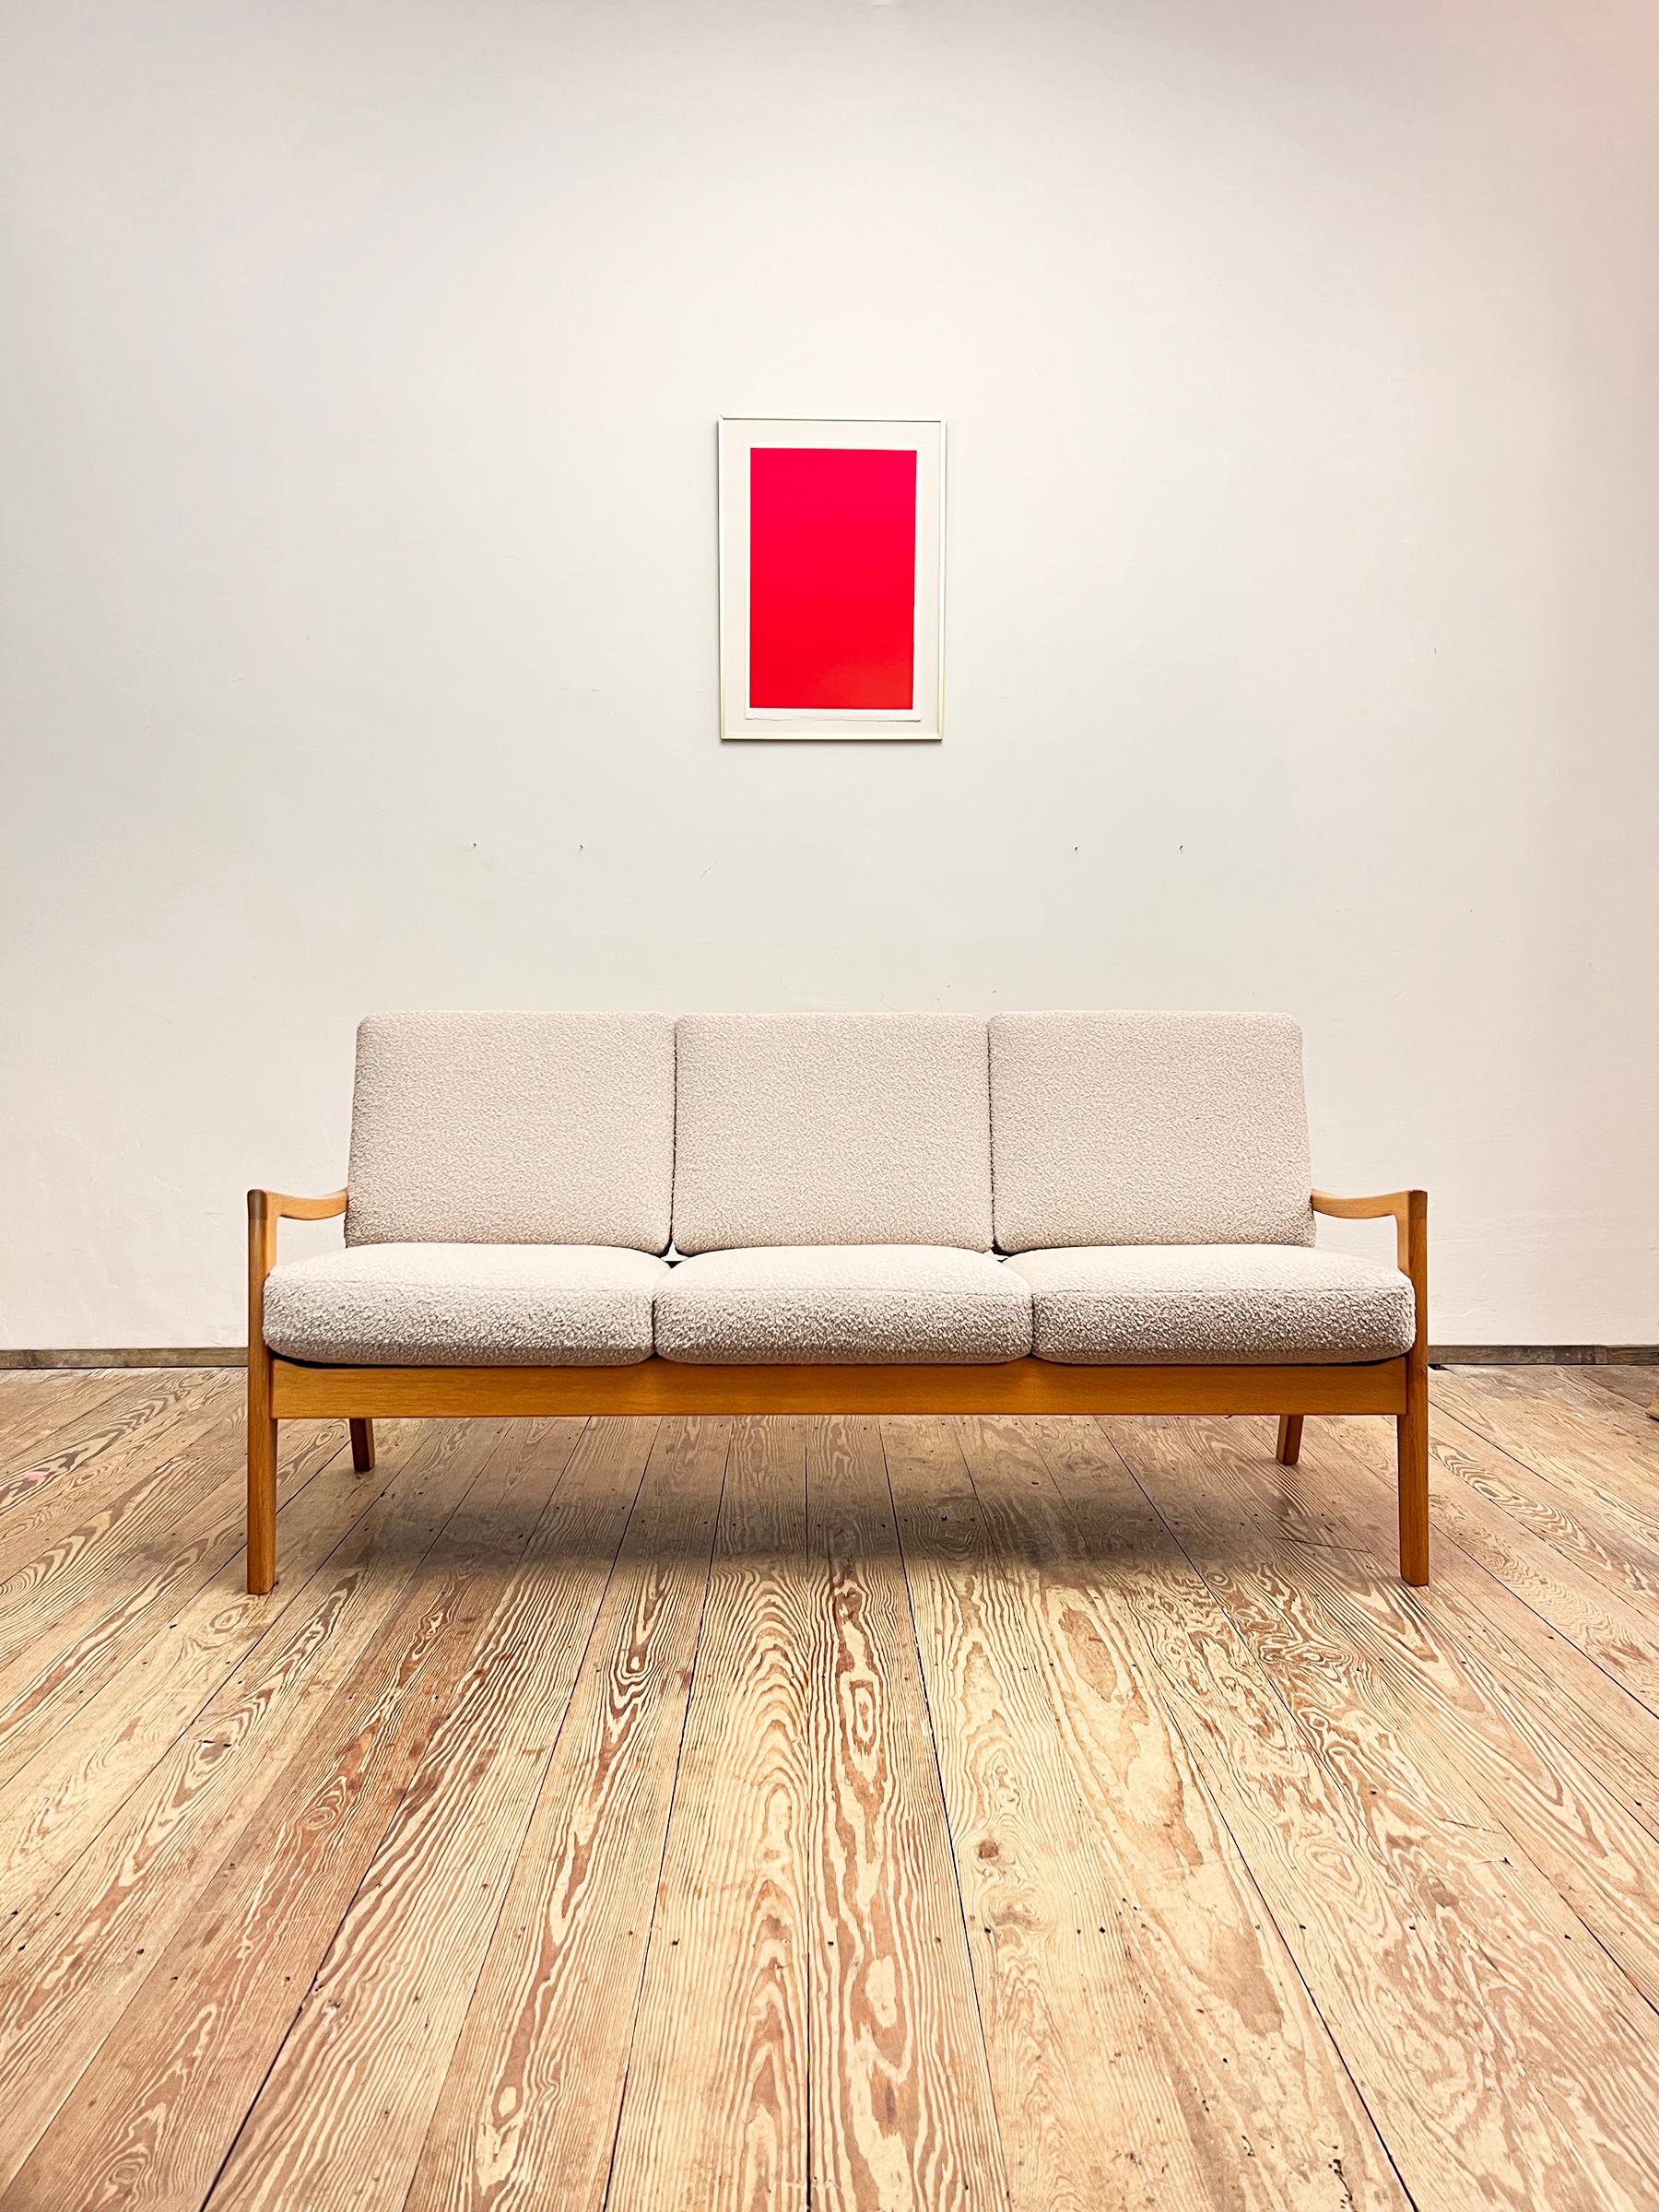 Abmessungen: 182 x 75 x 80 cm (Breite x Höhe x Tiefe)

Dieses dreisitzige Mid-Century-Sofa wurde von Ole Wanscher für die Sentator-Serie für France and Son in den 1950er Jahren entworfen. Dieses Modell ist aus massivem Eichenholz gefertigt und wurde